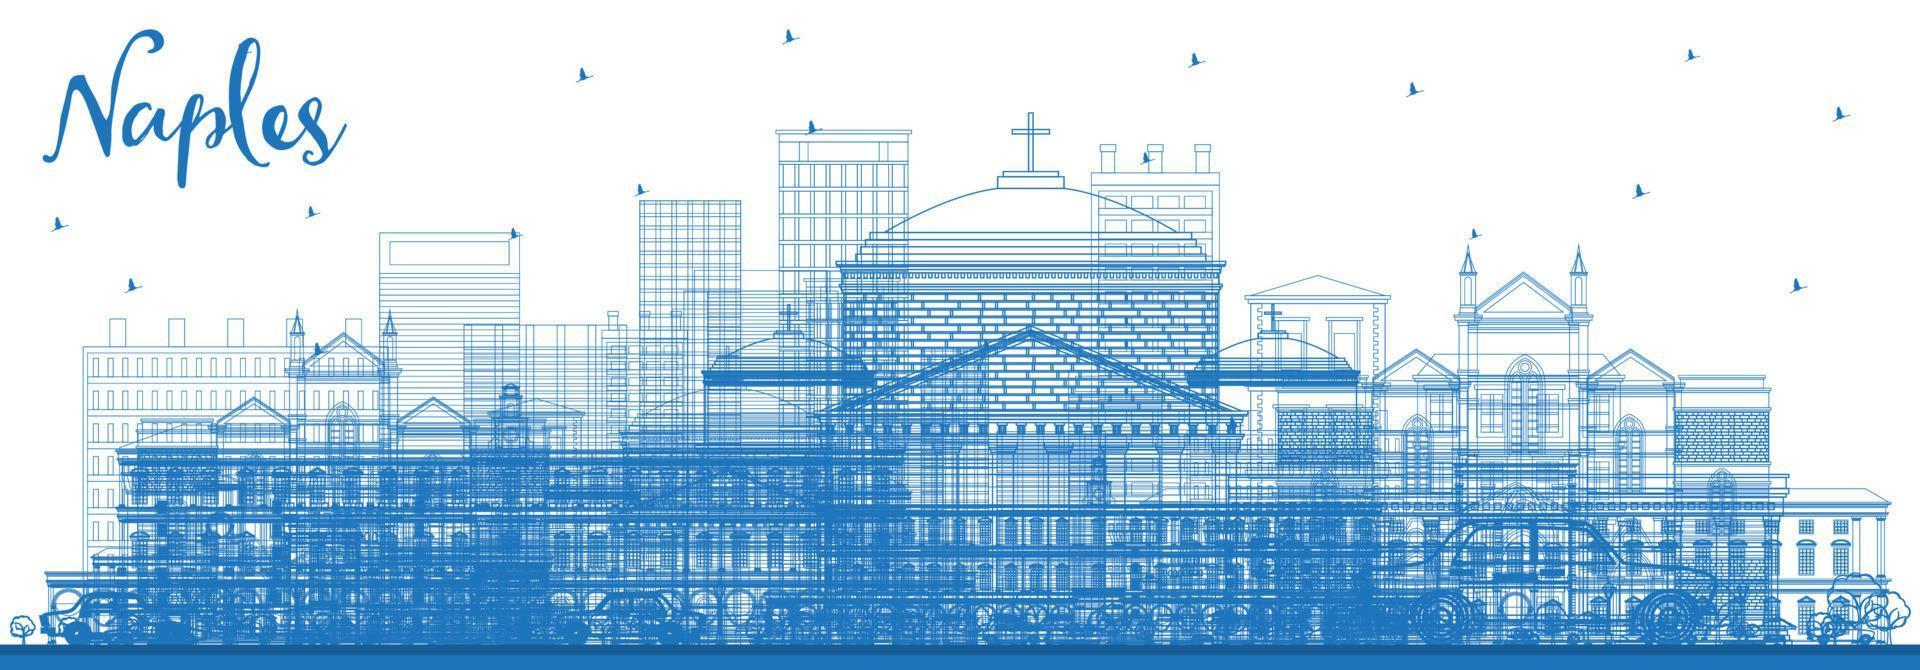 delinear el horizonte de la ciudad de nápoles, italia, con edificios azules. vector